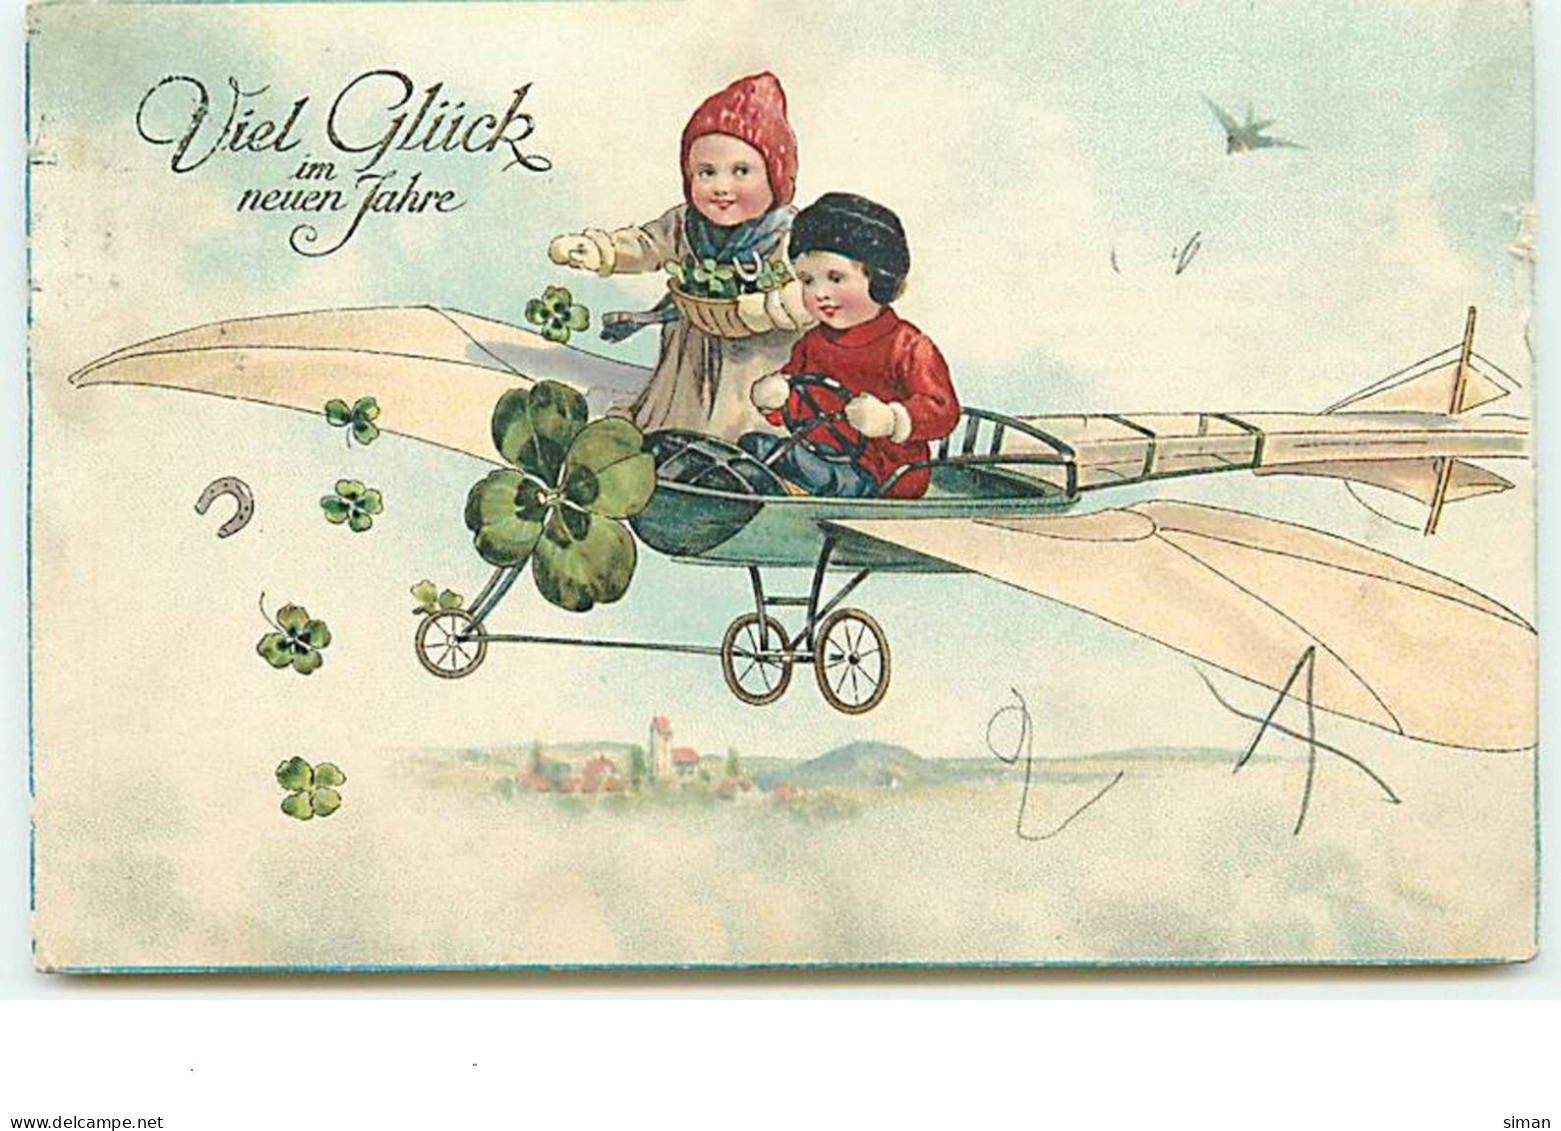 N°13888 - Viel Glück Im Nueun Jahre - Enfants Dans Un Avion, Lançant Des Portes-bonheur - Neujahr